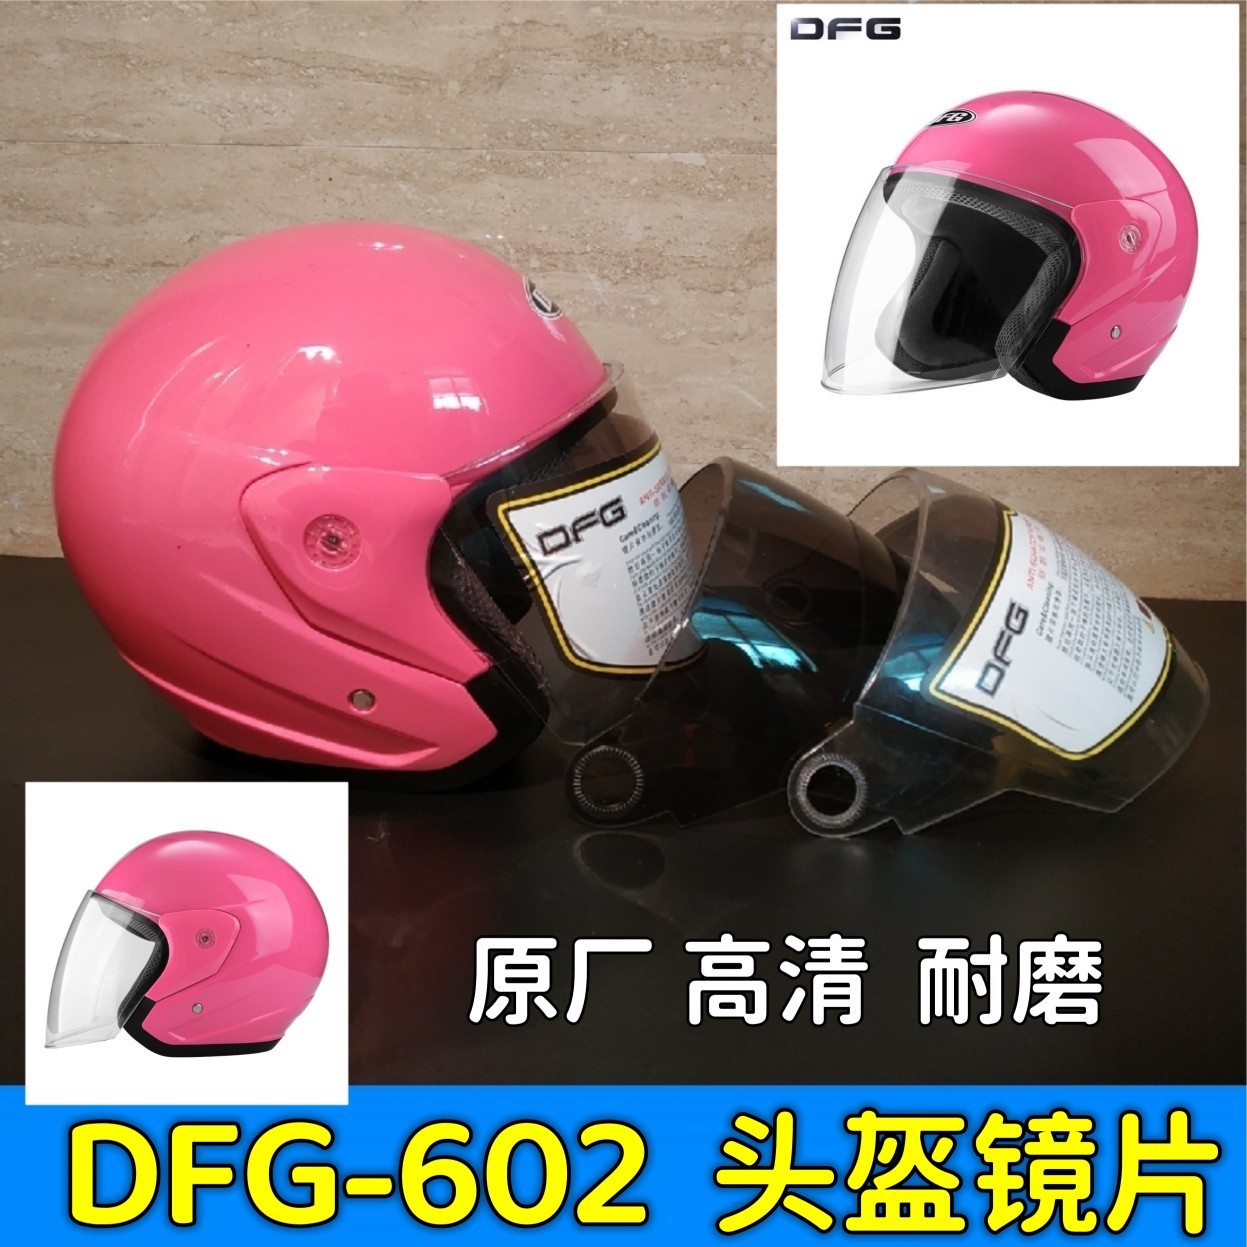 摩托车头盔镜片dfg602通用透明高清强化防雾半盔挡风面罩玻璃防晒